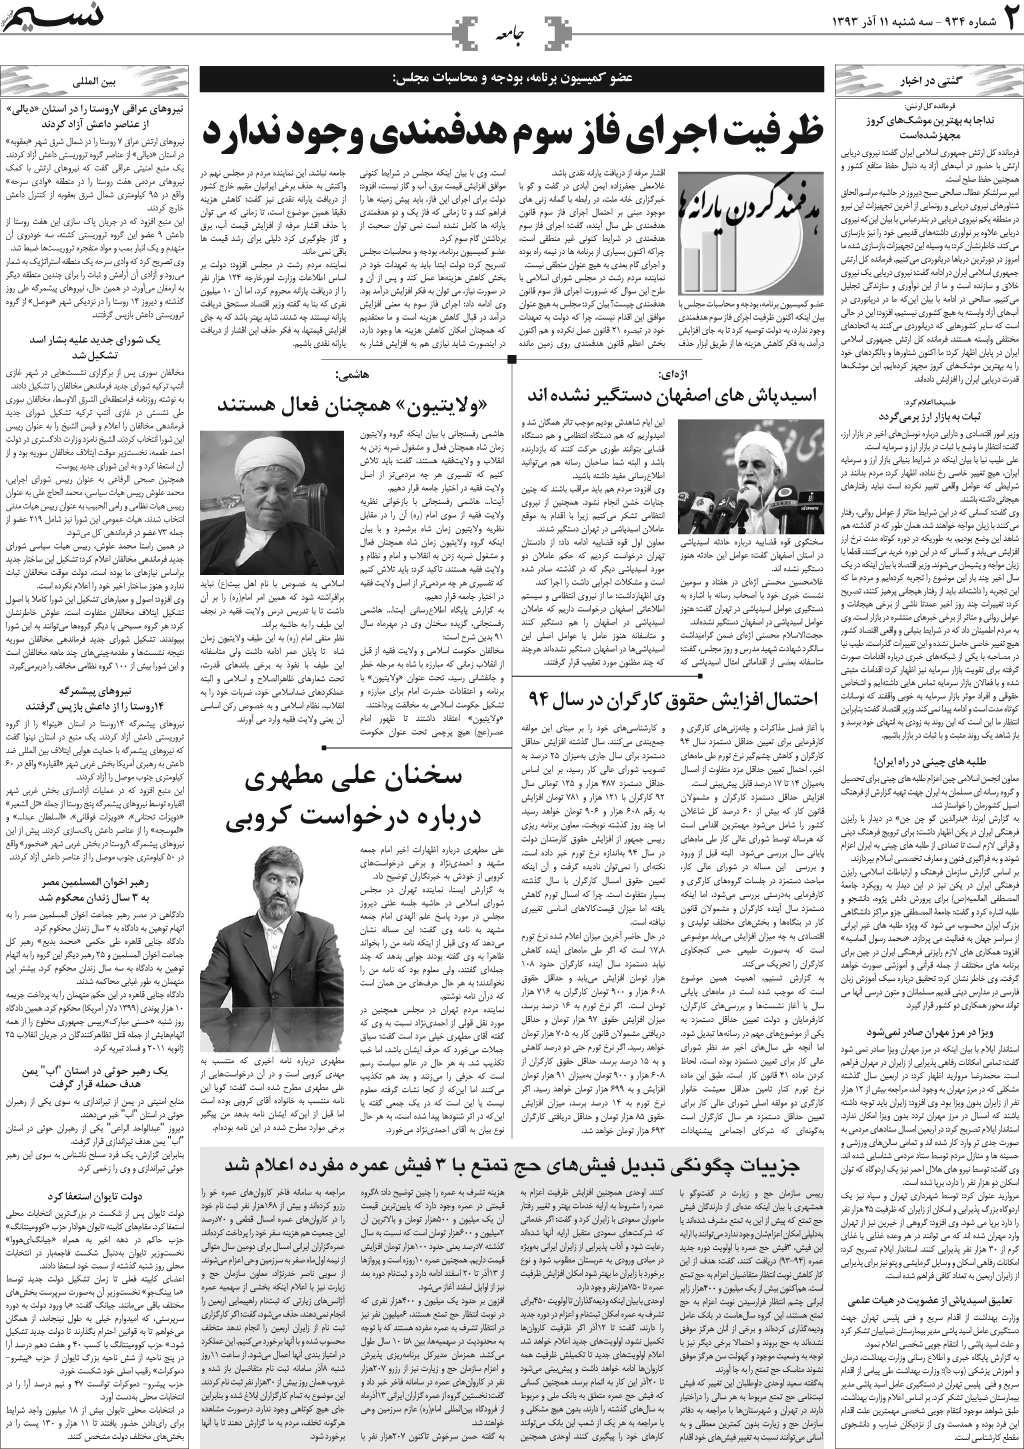 صفحه جامعه روزنامه نسیم شماره 934